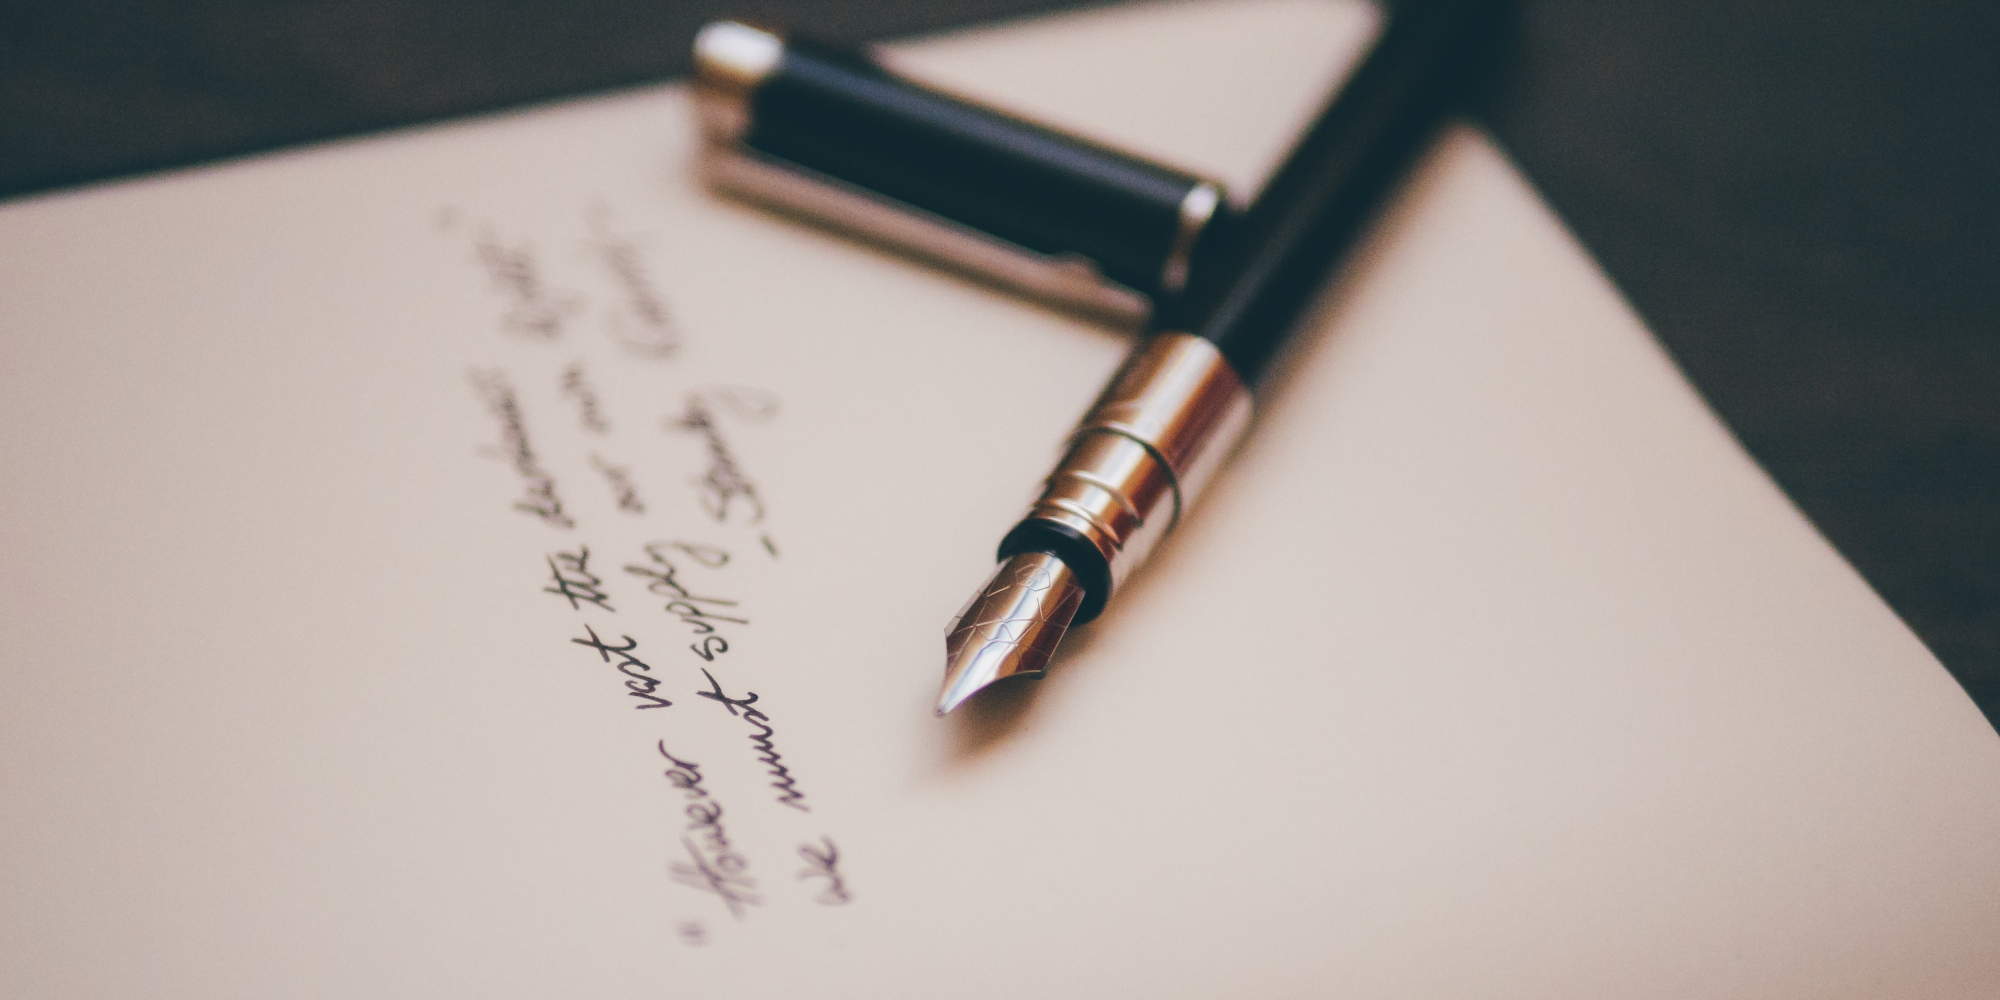 Πένα σε χαρτί, την ώρα που γεννιέται η ποίηση